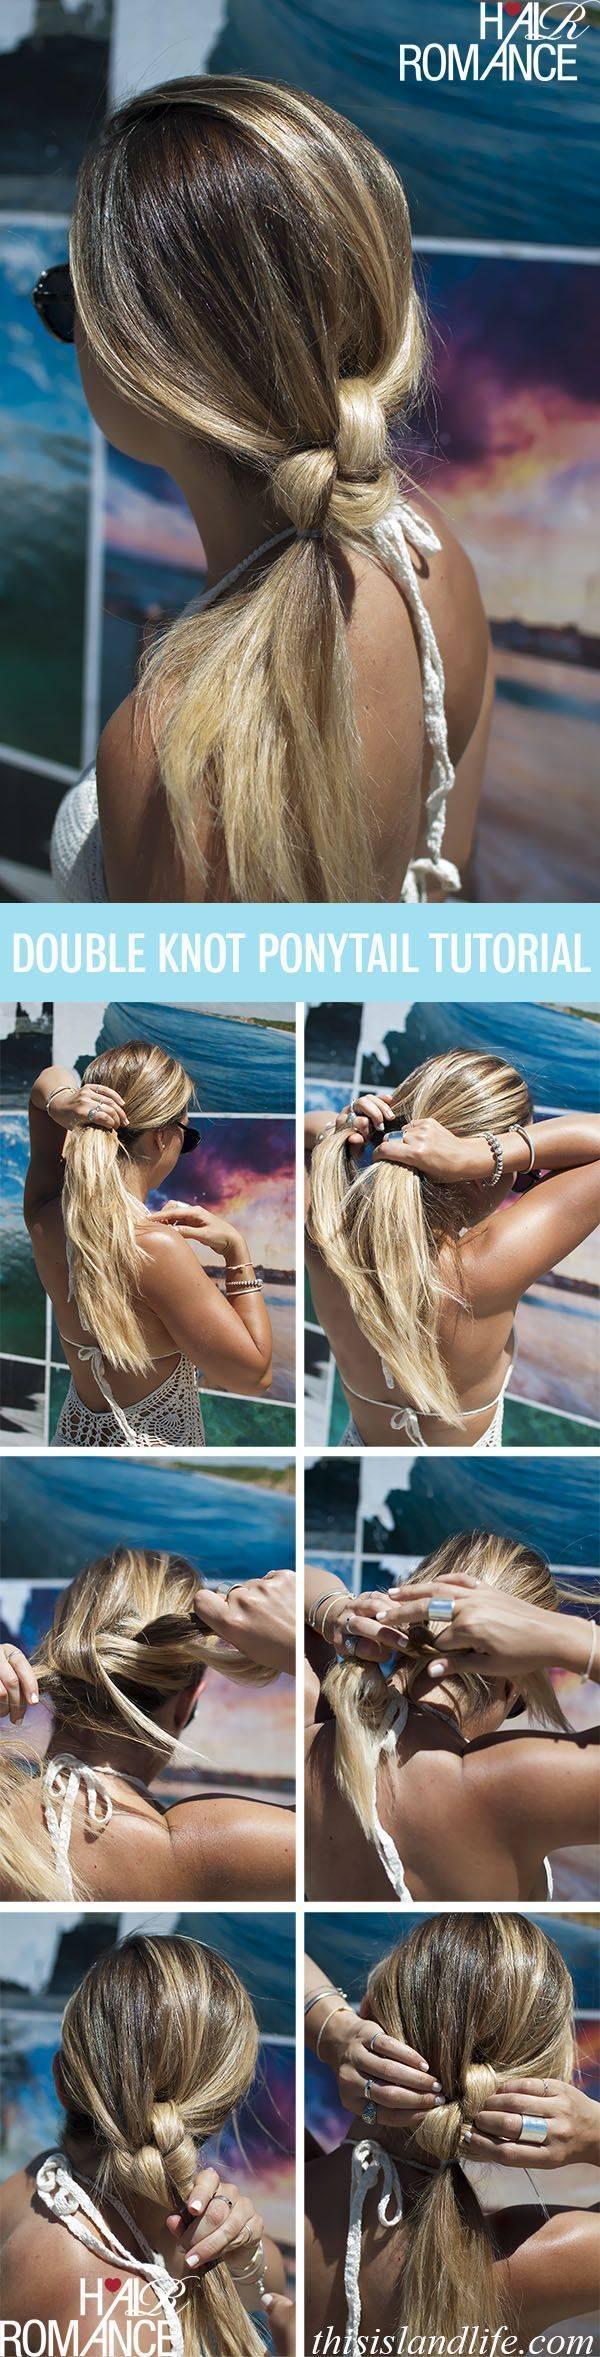 รูปภาพ:http://www.prettydesigns.com/wp-content/uploads/2014/08/Double-knotted-ponytail-Tutorial.jpg